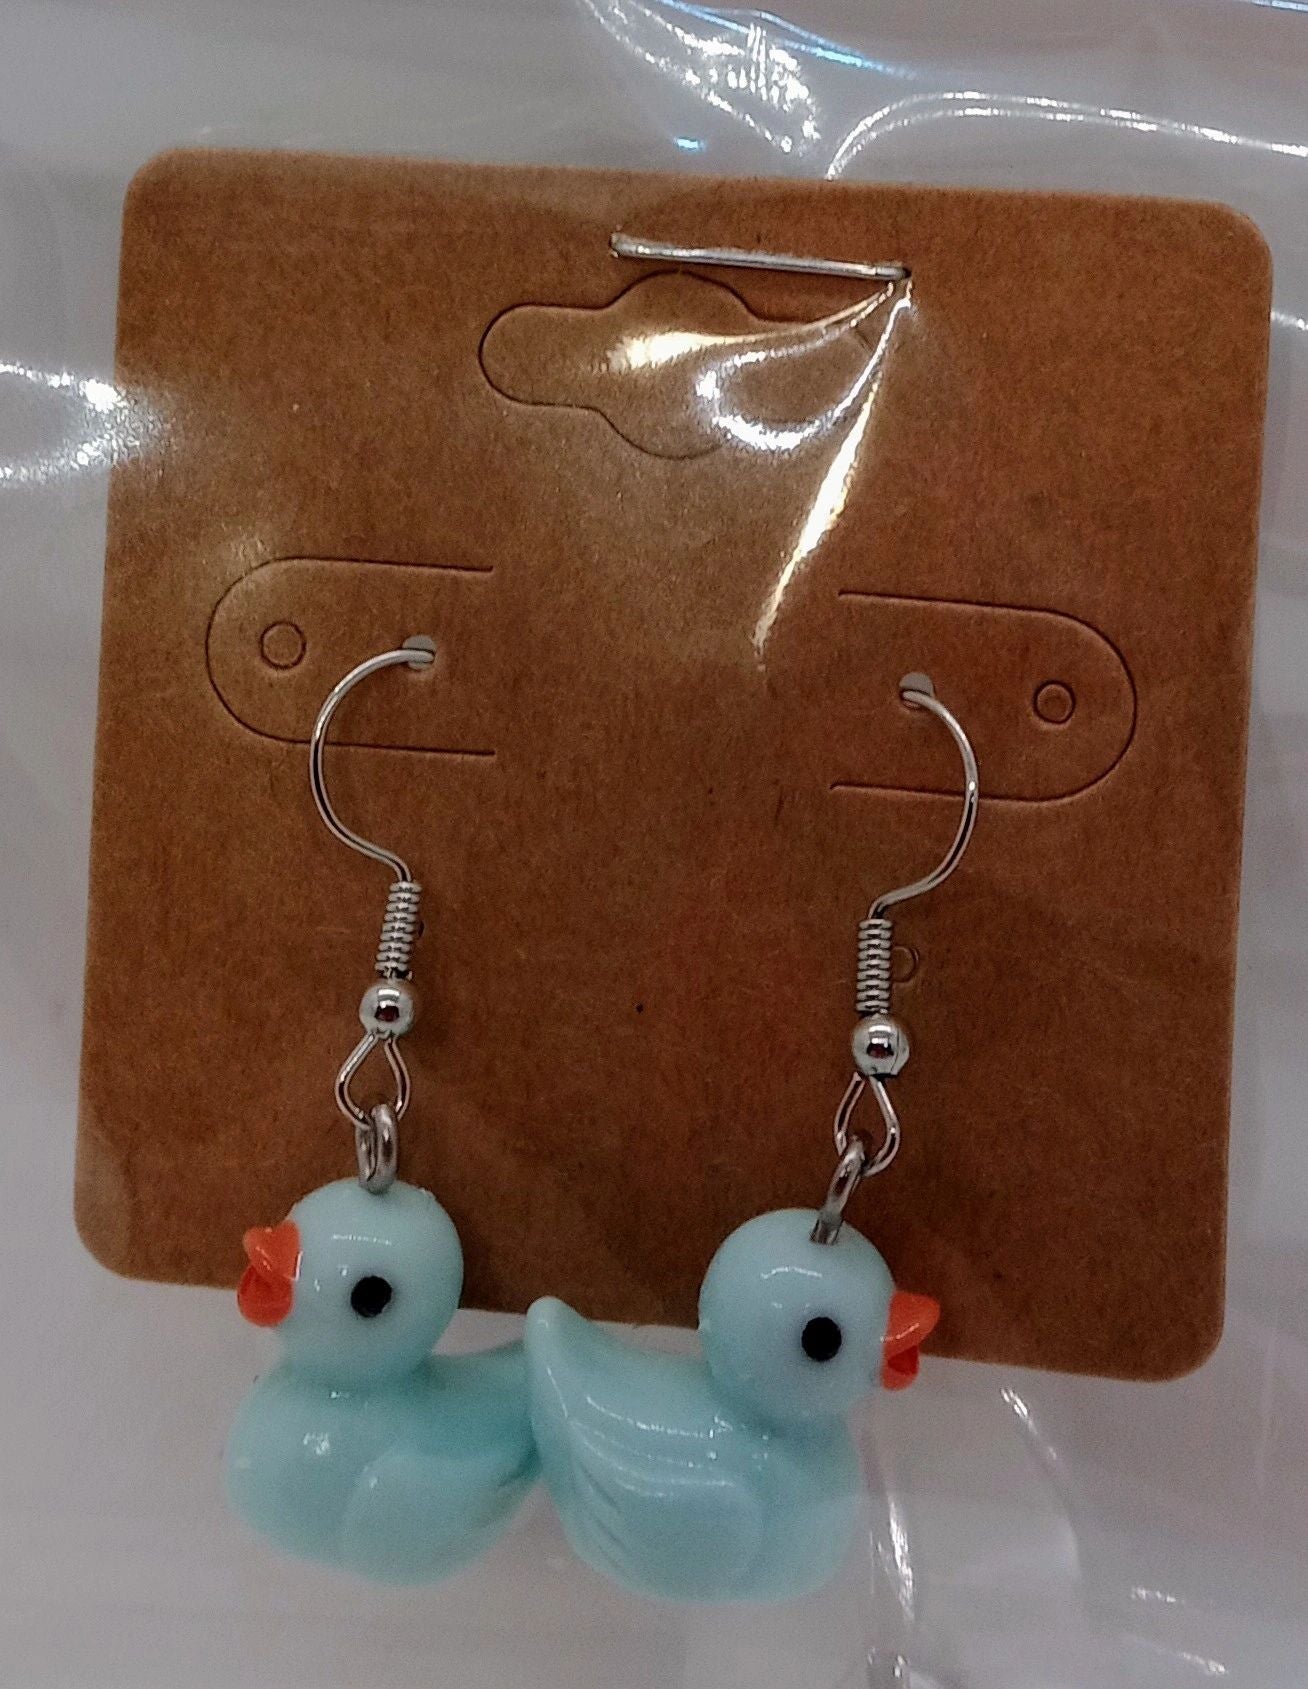 Rubber duckie earrings